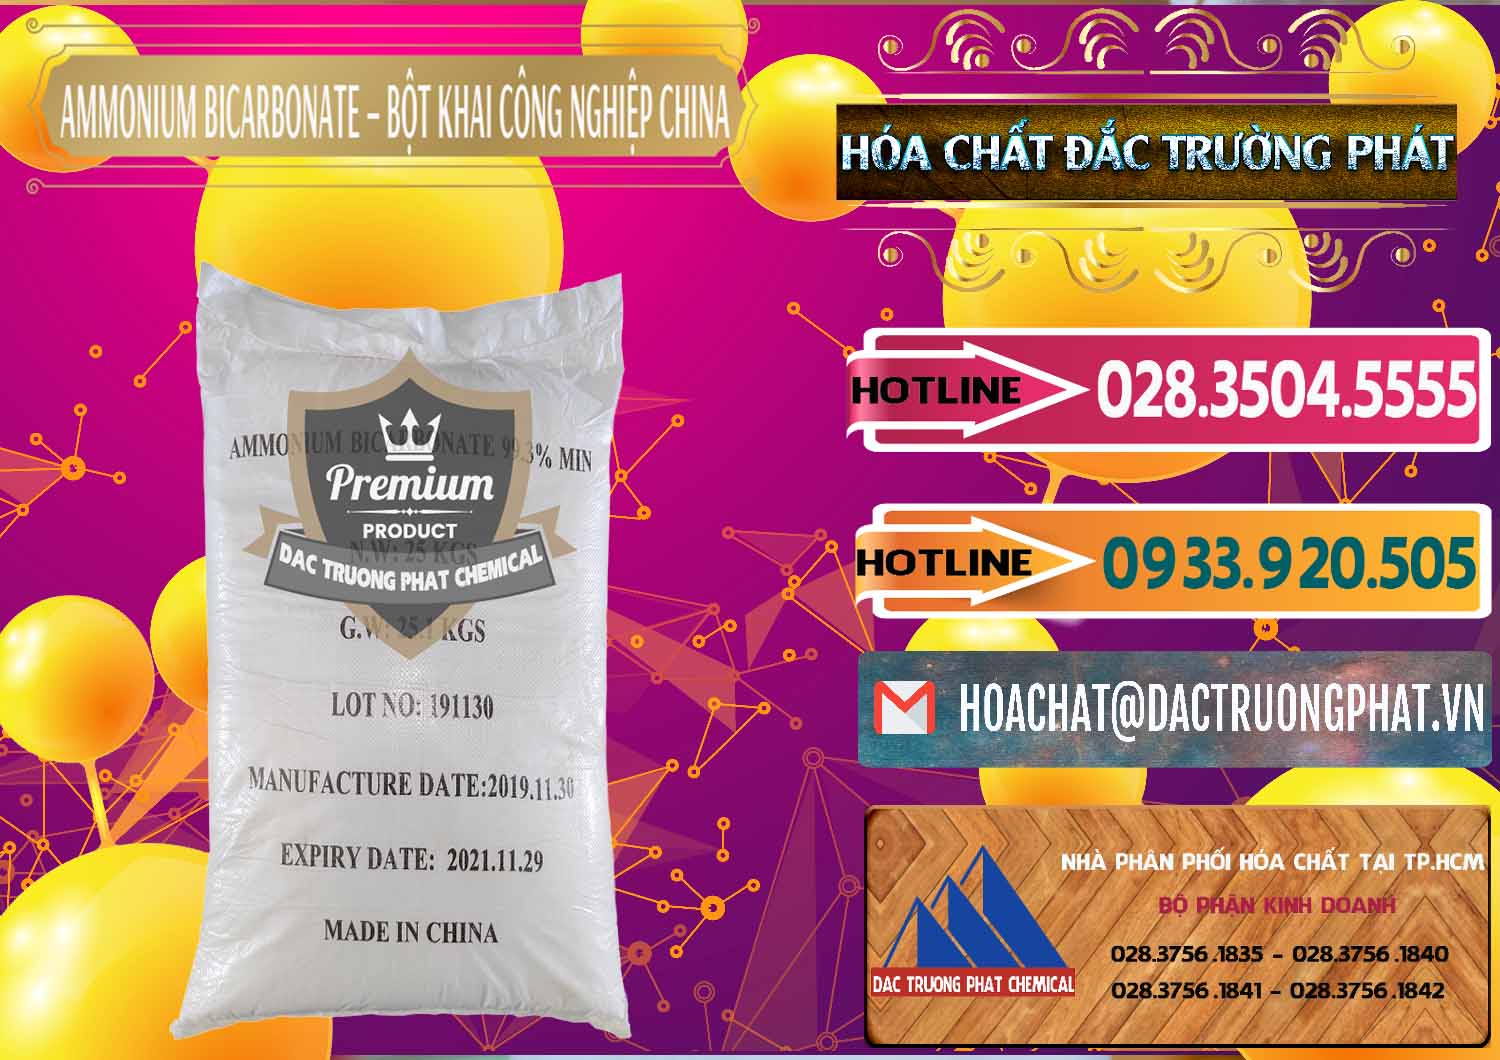 Nhà cung cấp _ bán Ammonium Bicarbonate – Bột Khai Công Nghiệp Trung Quốc China - 0020 - Công ty chuyên phân phối và bán hóa chất tại TP.HCM - dactruongphat.vn